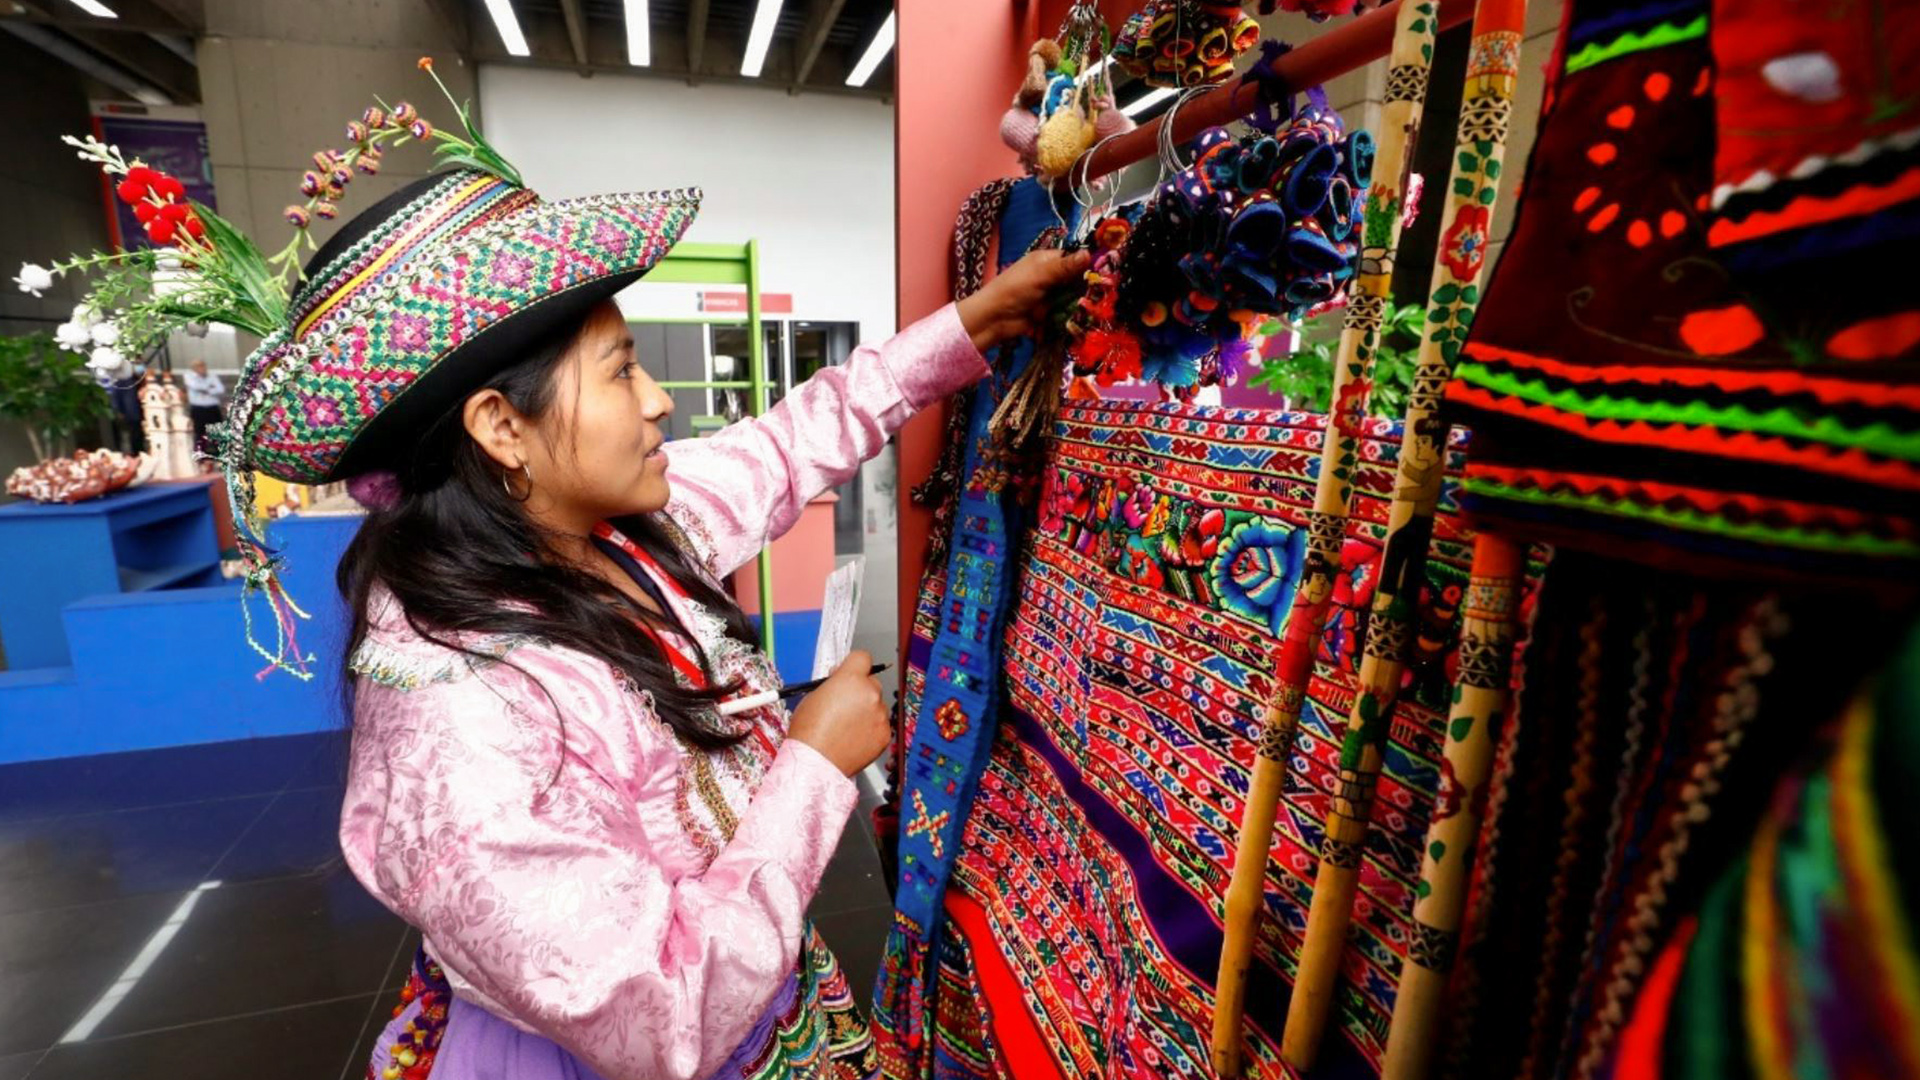 Imagen referencial de Andina donde sale una mujer artesana mostrando una artesanía en tejido